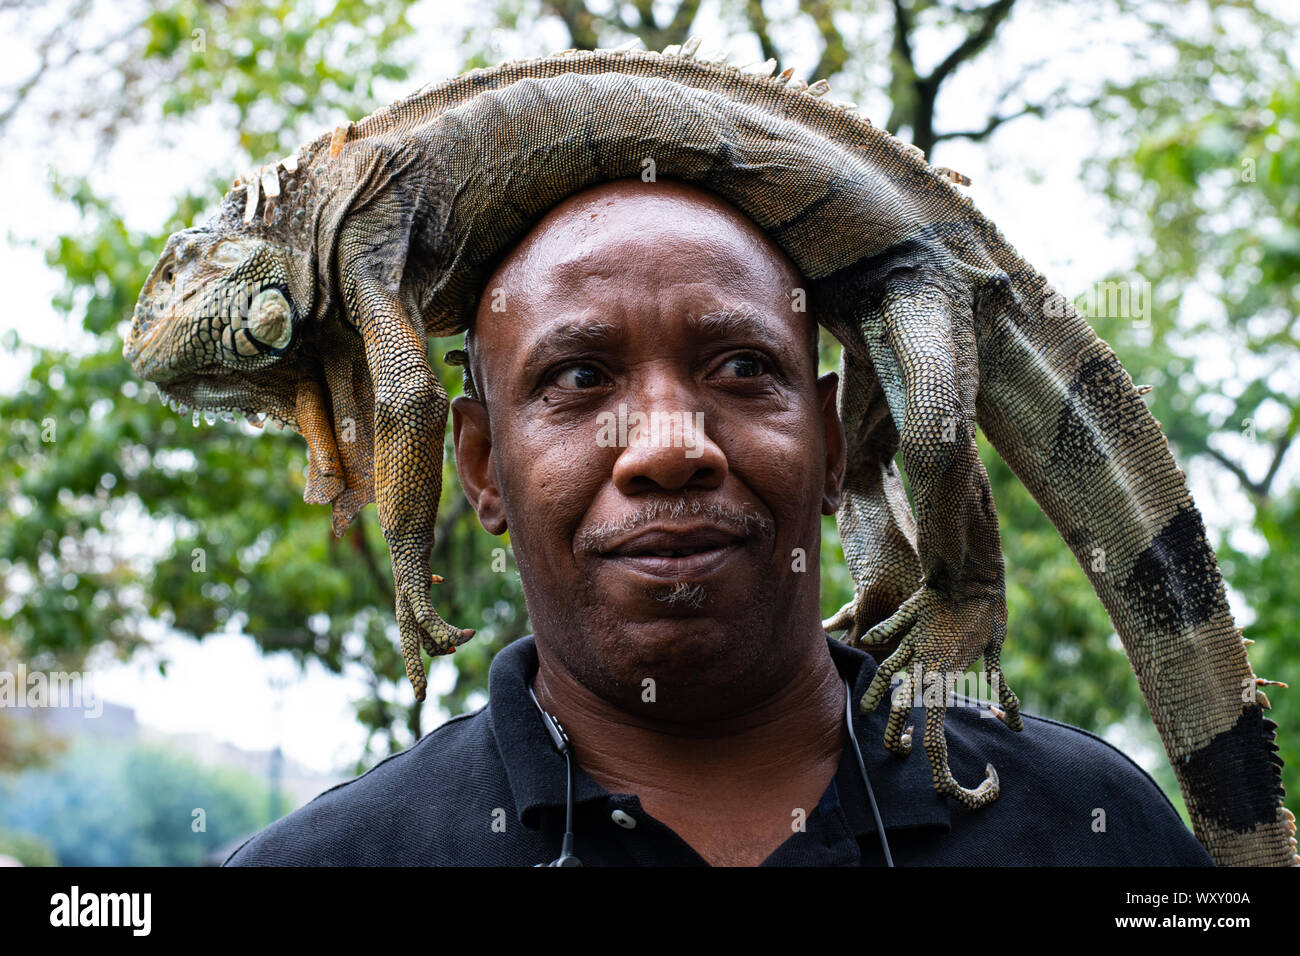 Ein Mann hat sich einen Leguan auf seinen Kopf gelegt und posiert damit vor der Kamera Stock Photo